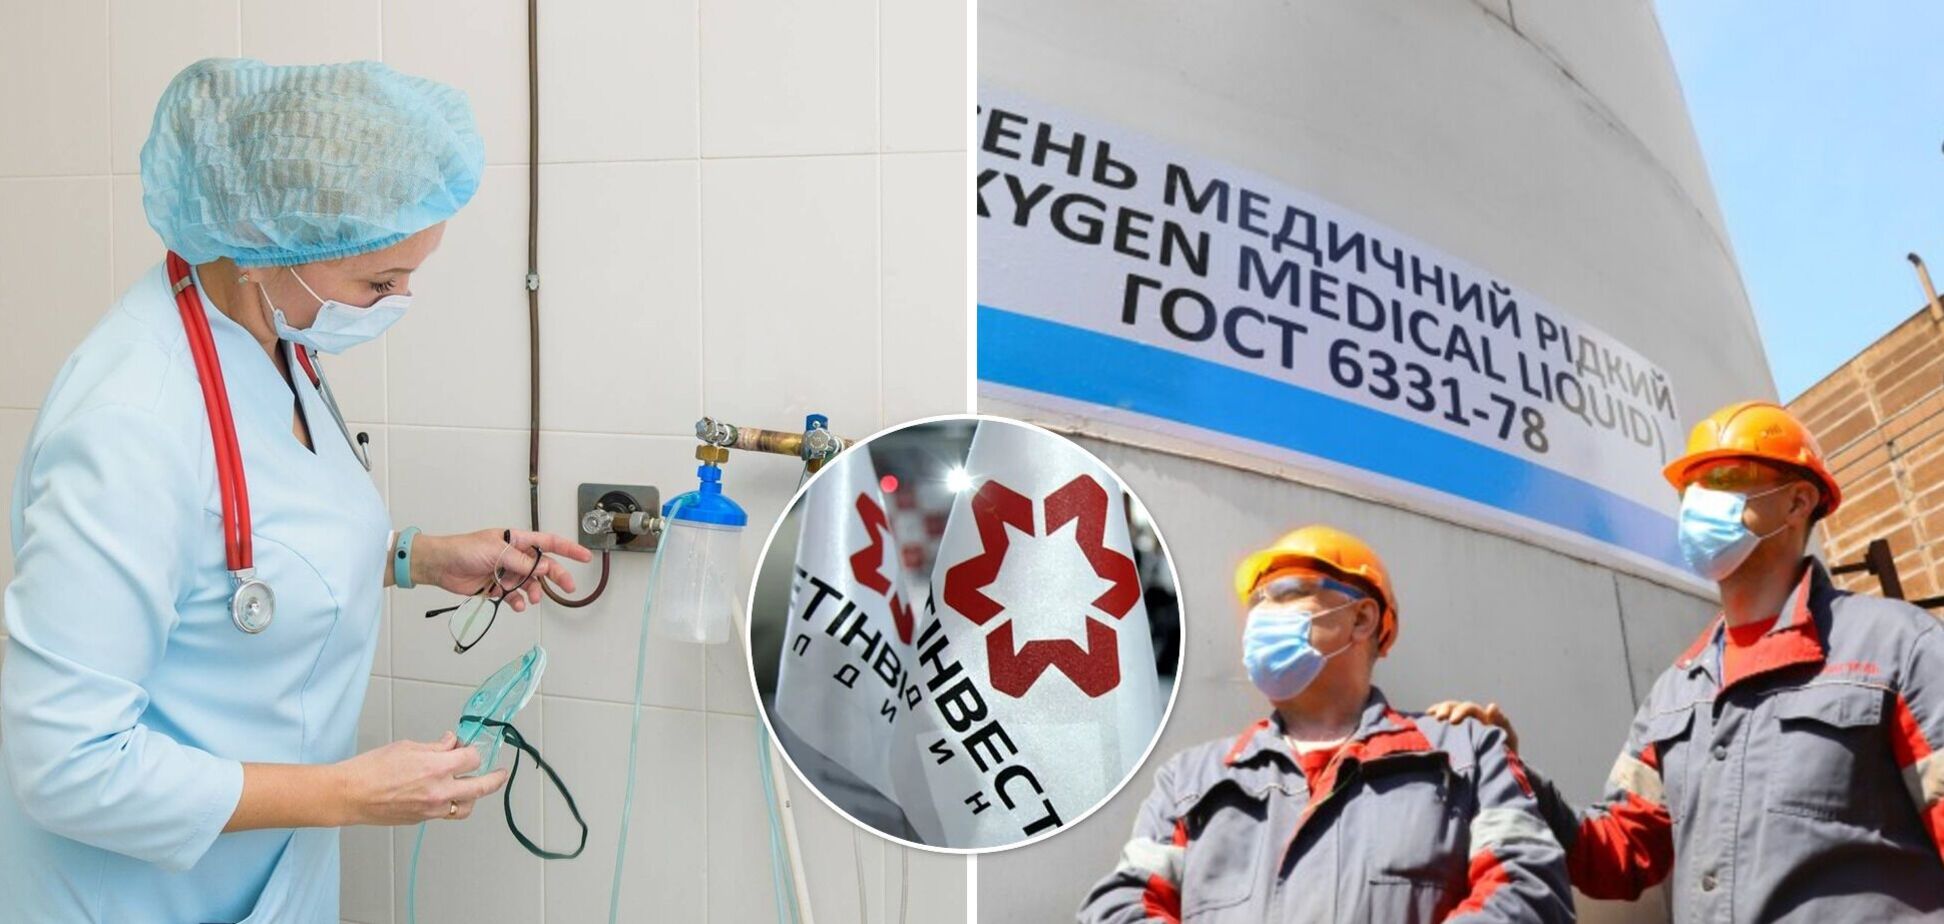 'Метинвест' стал одним из крупнейших поставщиков медицинского кислорода в больнице